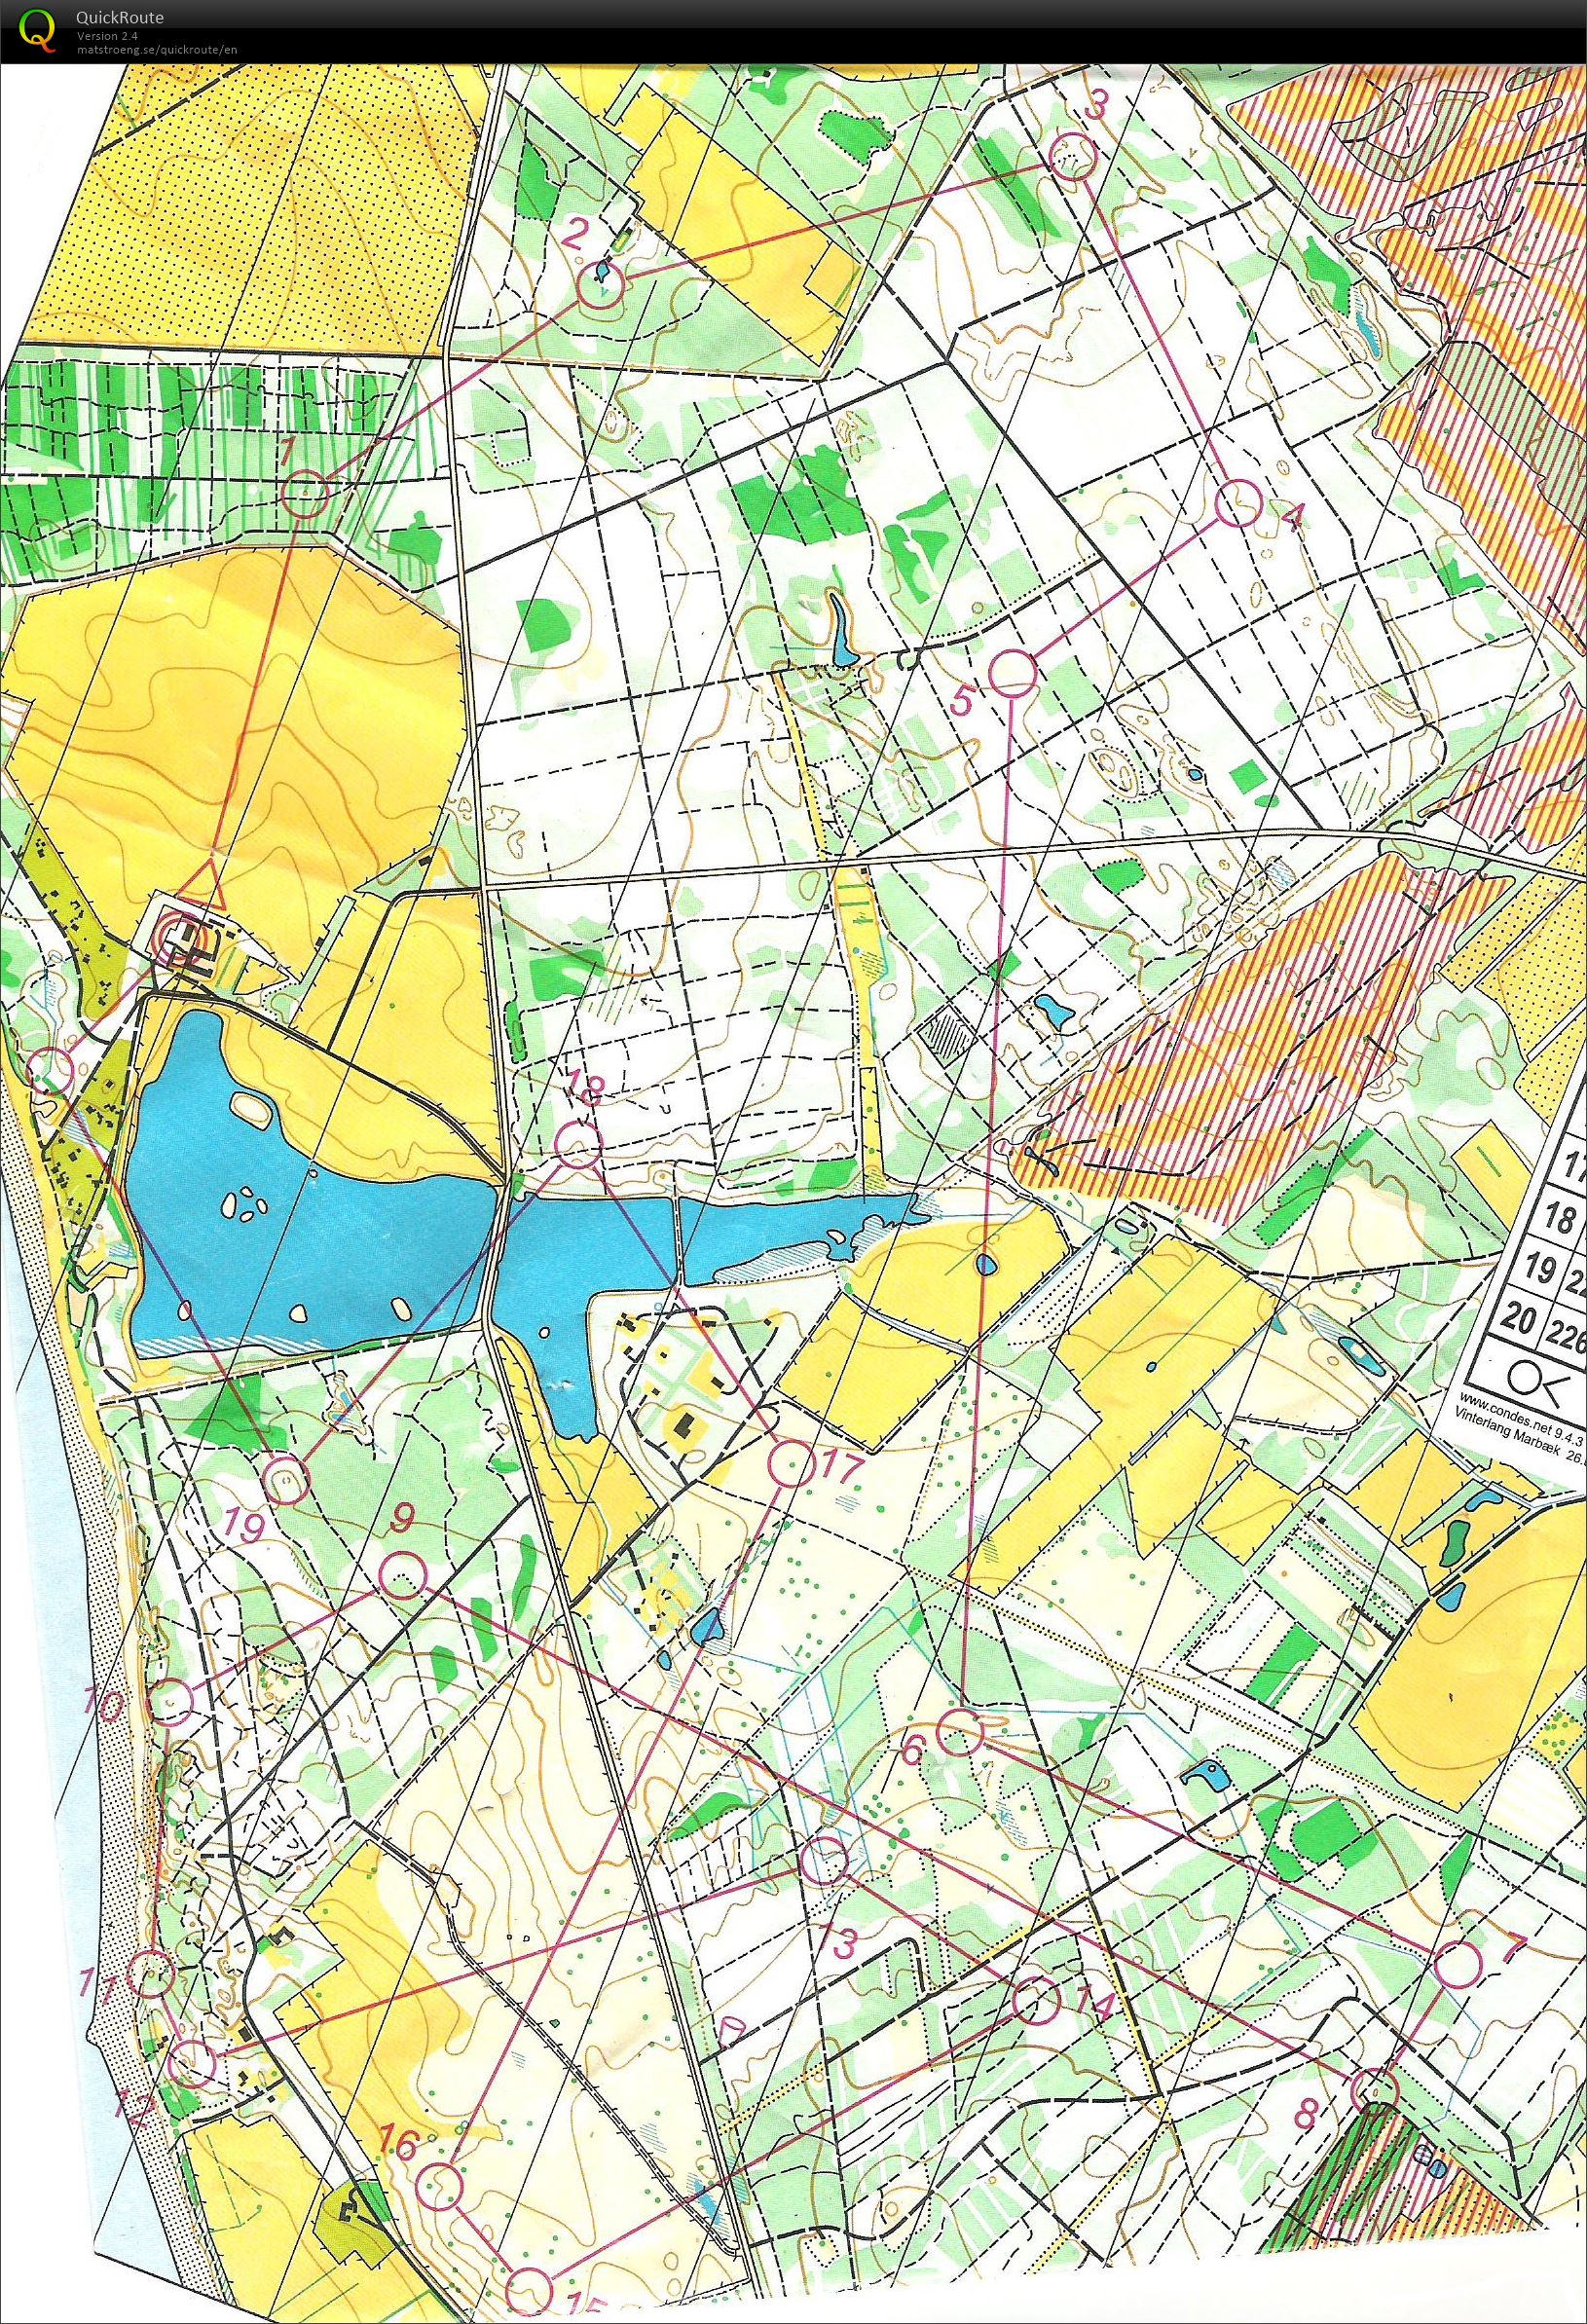 Vinterlangdistance Marbæk Plantage 12.3 km (26-02-2017)